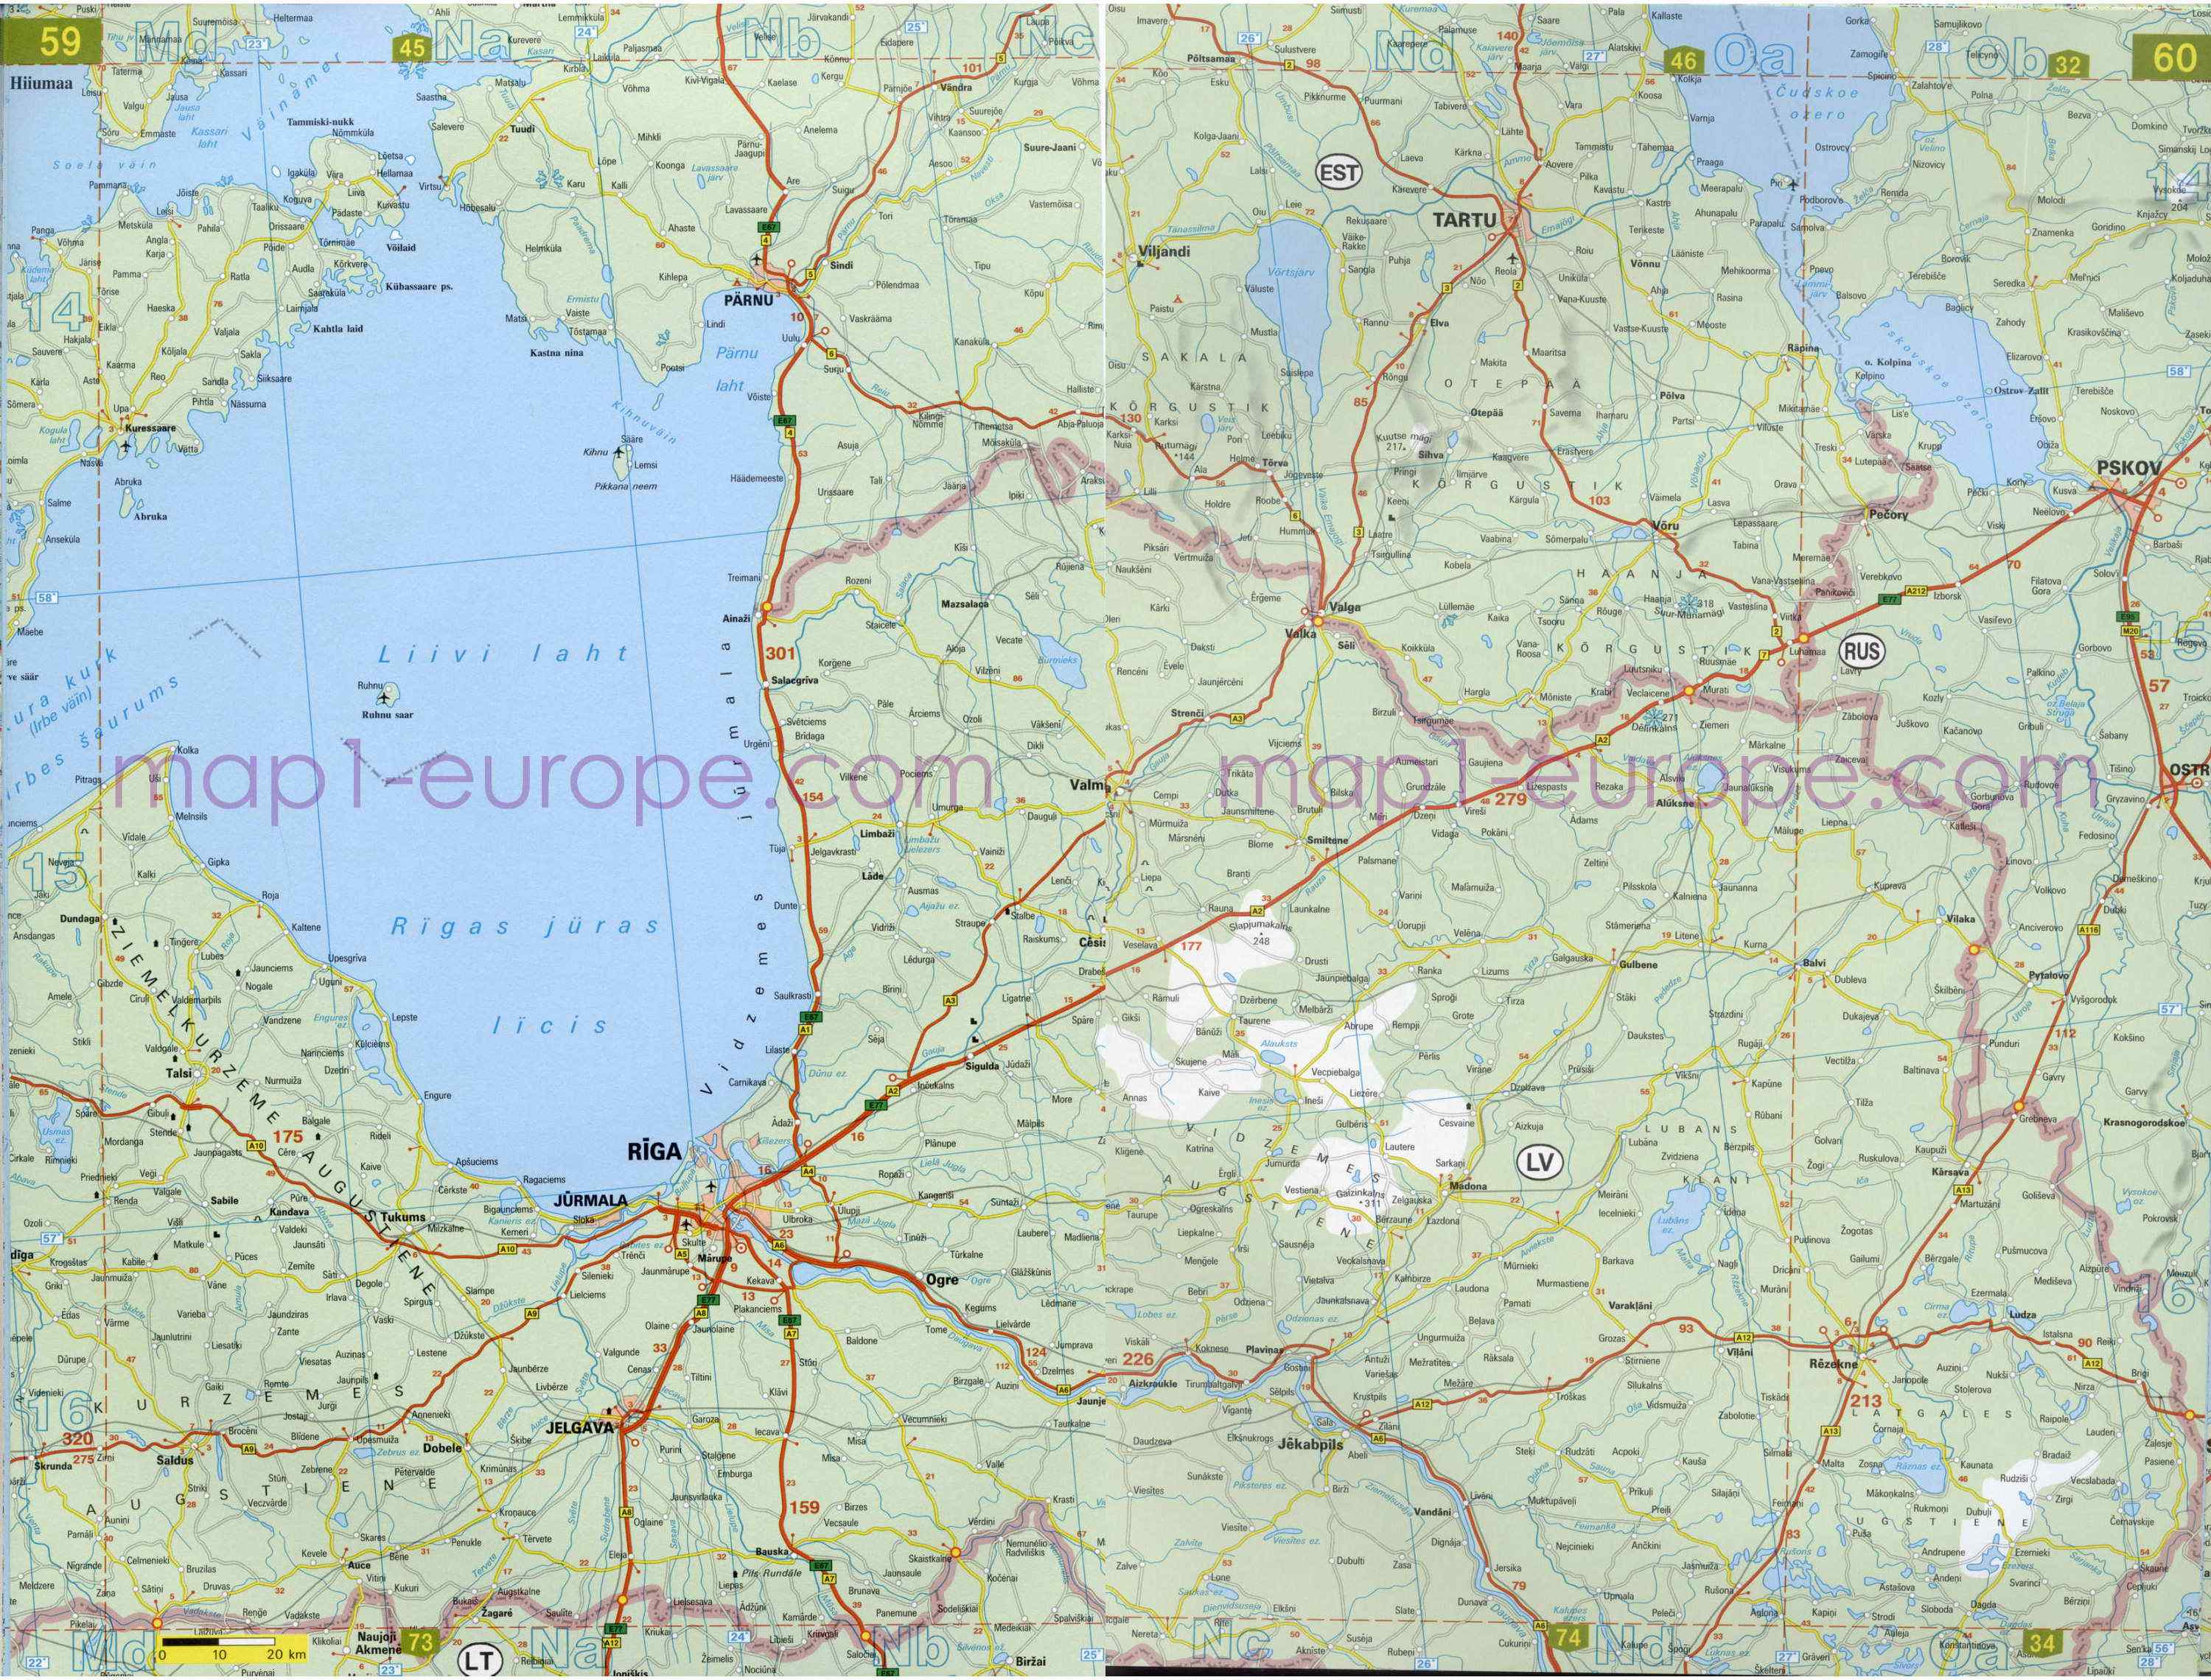 Автомобильная карта Европы. Атлас автомобильных дорог Европы на общей карте, H1 - 